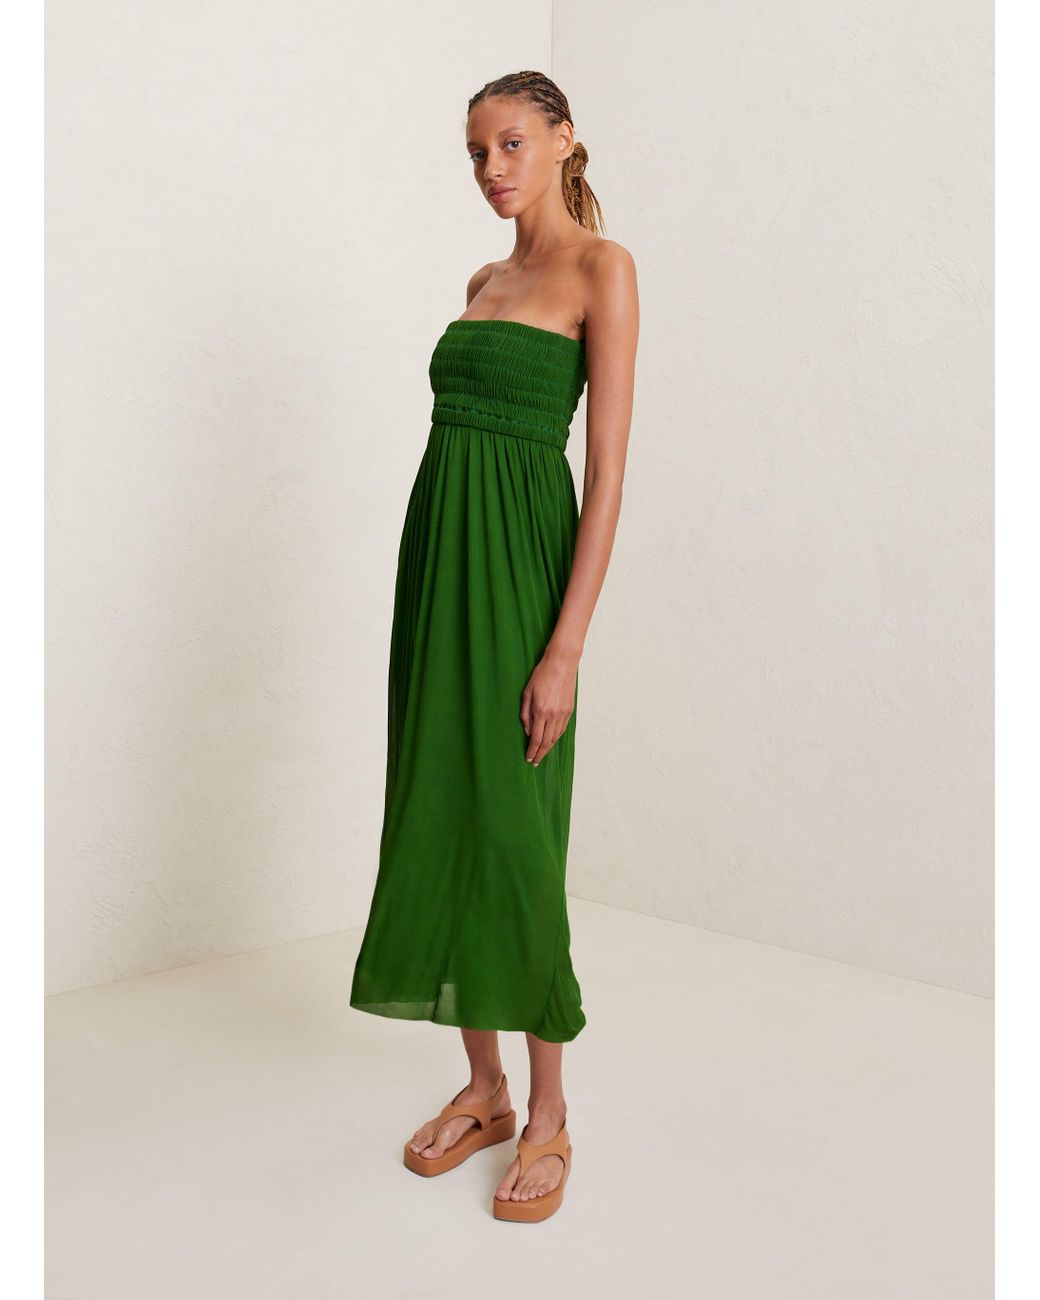 A.L.C. Tierra Jersey Midi Dress in Green | Lyst